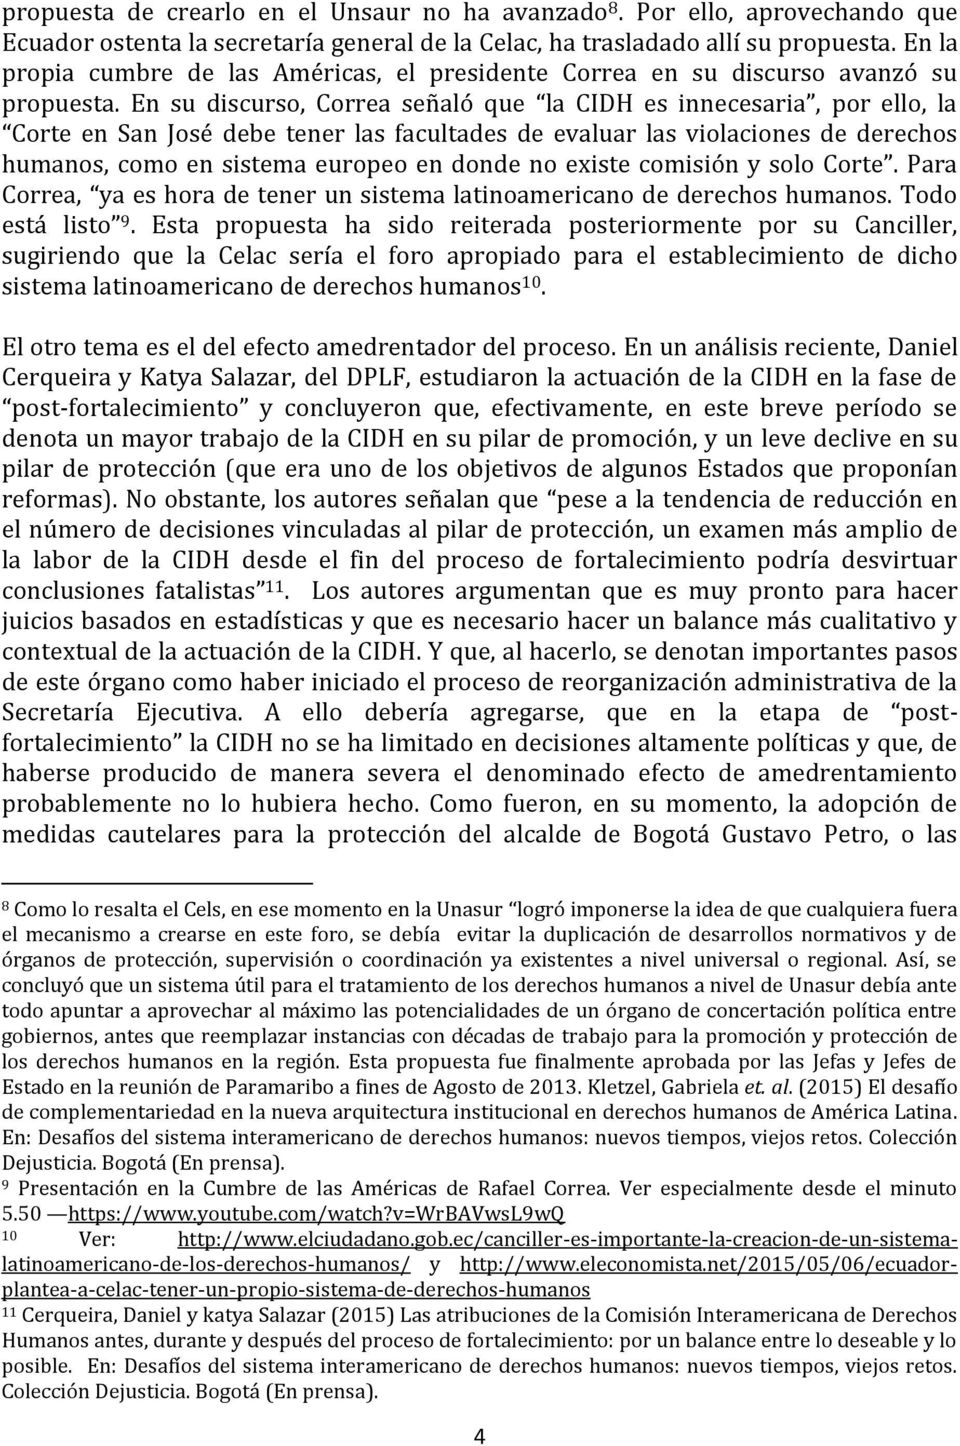 En su discurso, Correa señaló que la CIDH es innecesaria, por ello, la Corte en San José debe tener las facultades de evaluar las violaciones de derechos humanos, como en sistema europeo en donde no